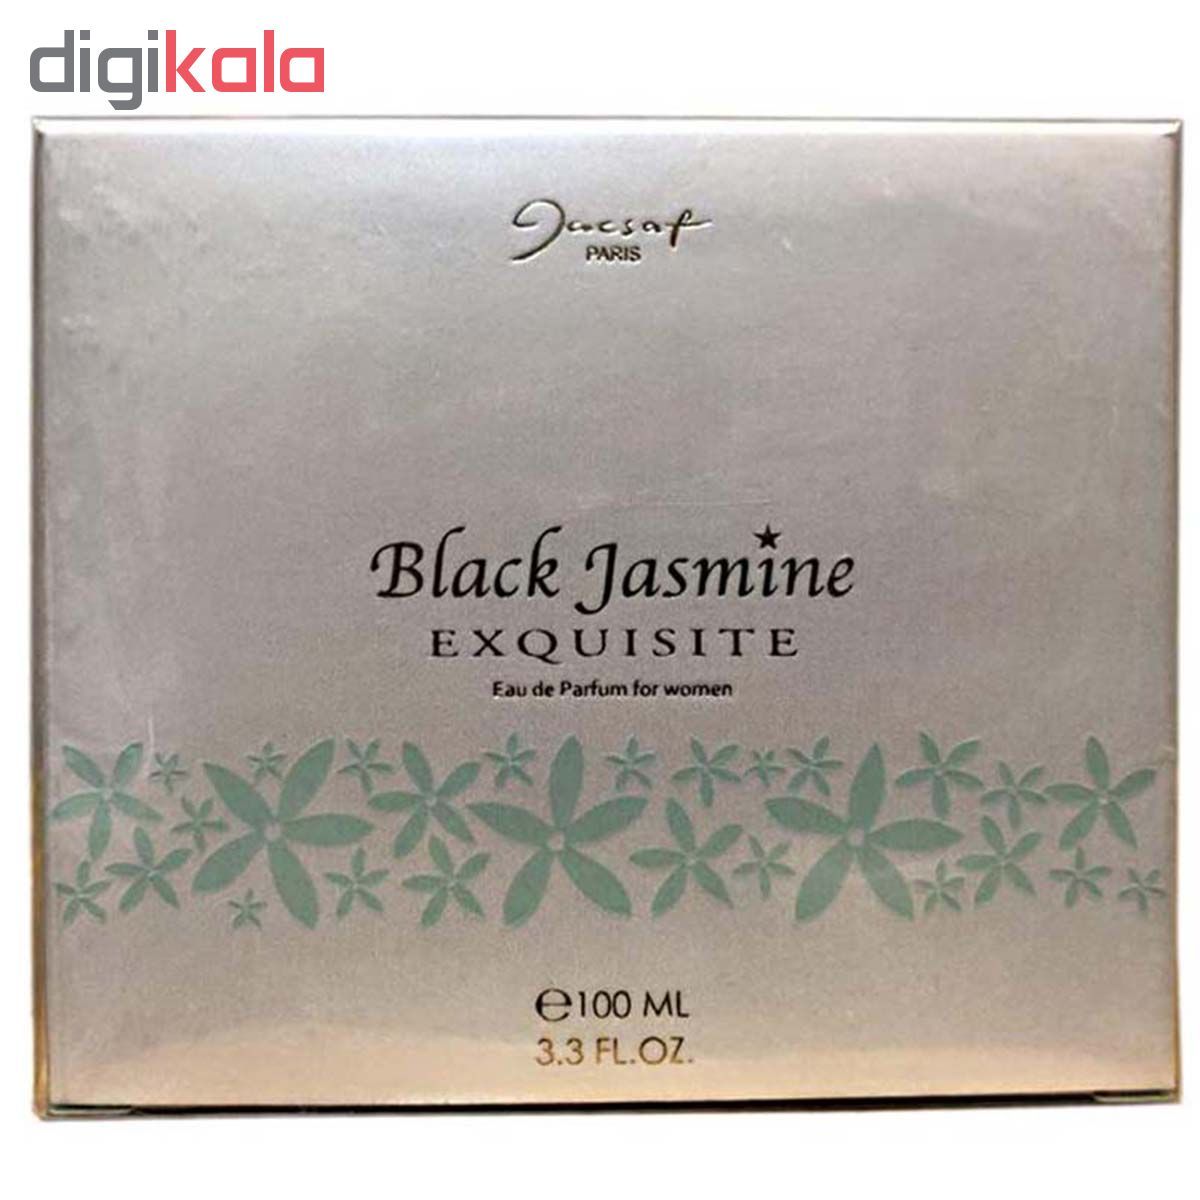 ادو پرفیوم زنانه ژک ساف مدل Black Jasmine Exquisite حجم 100 میلی لیتر -  - 2